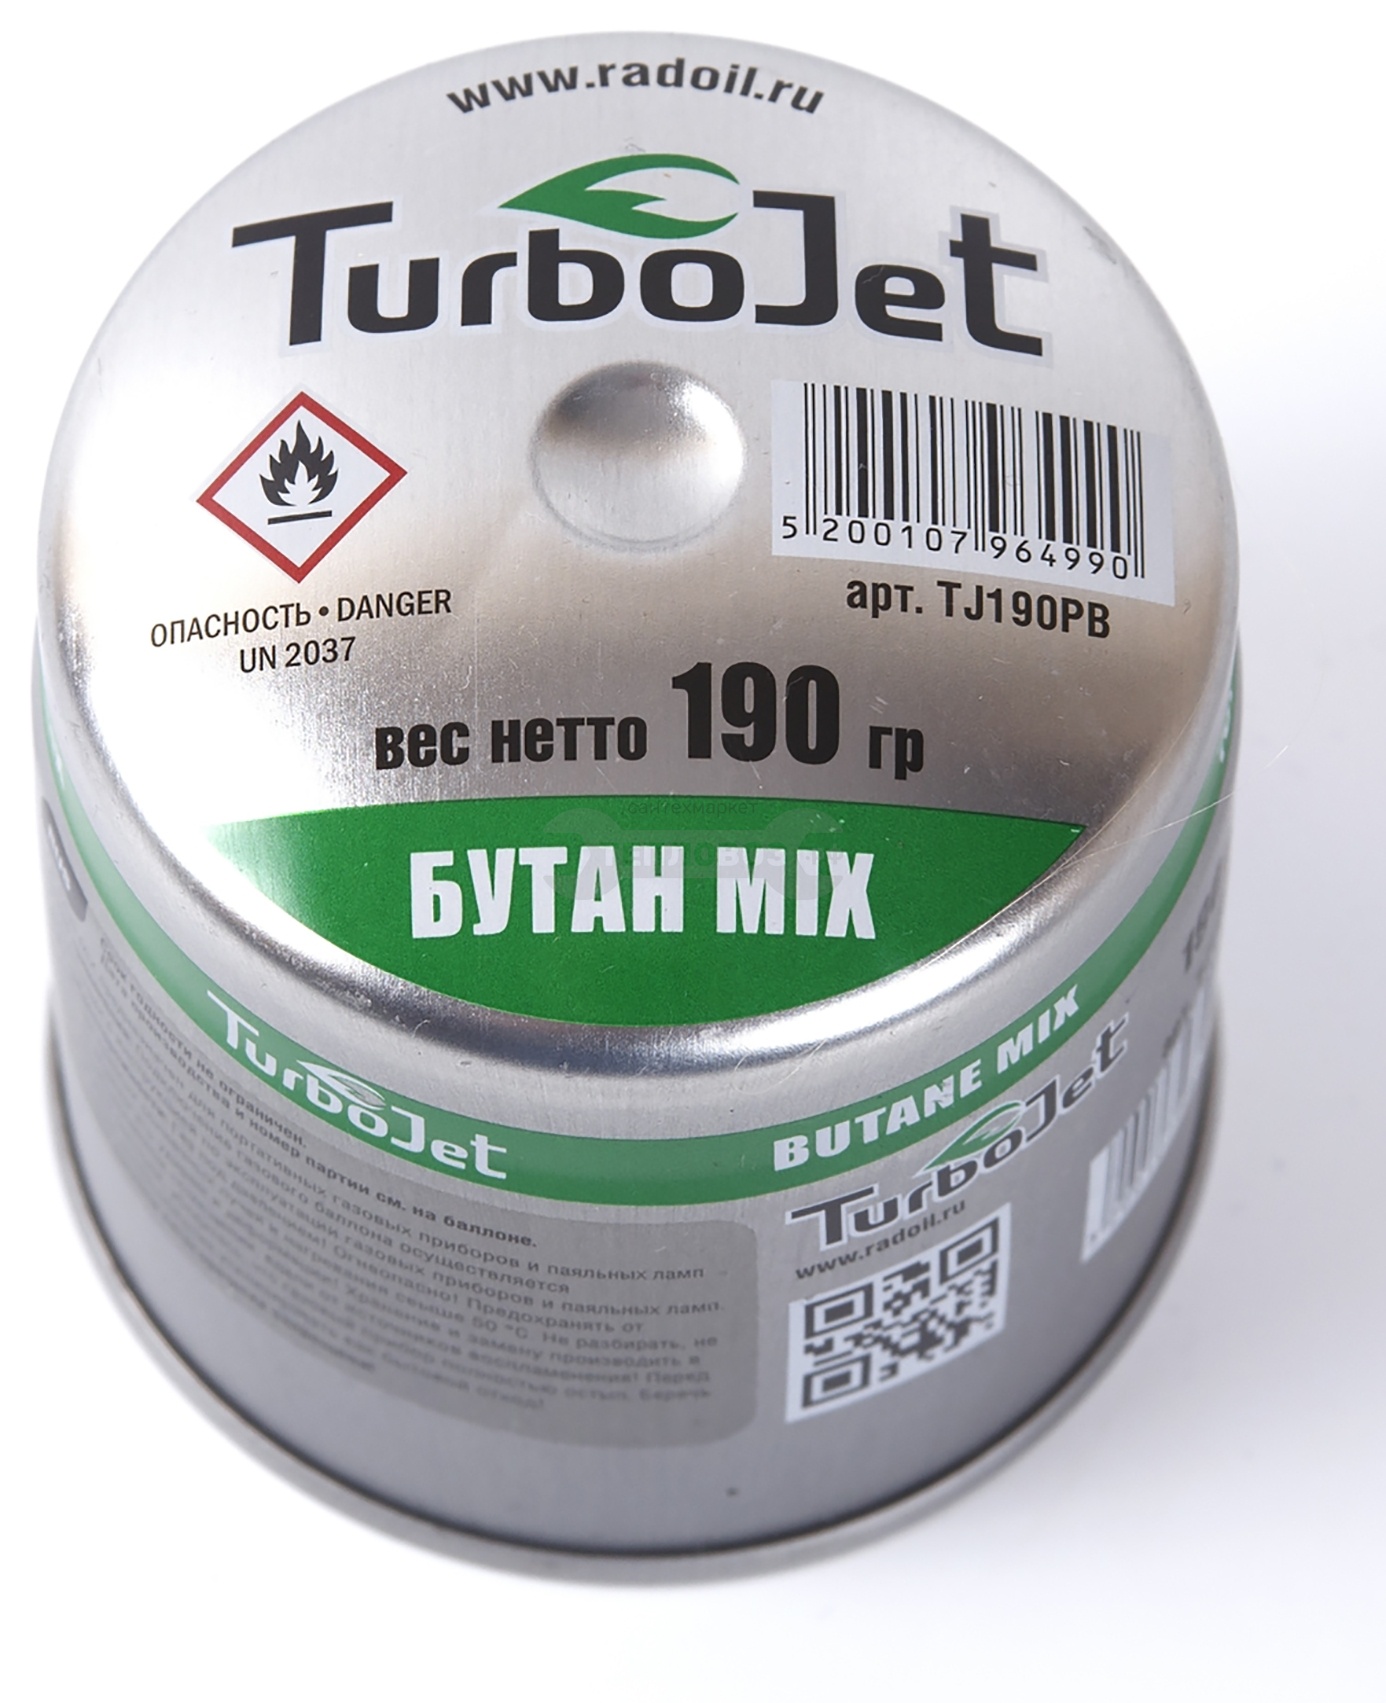 Купить Turbojet TJ190PB, 190 гр в интернет-магазине Тепловоз